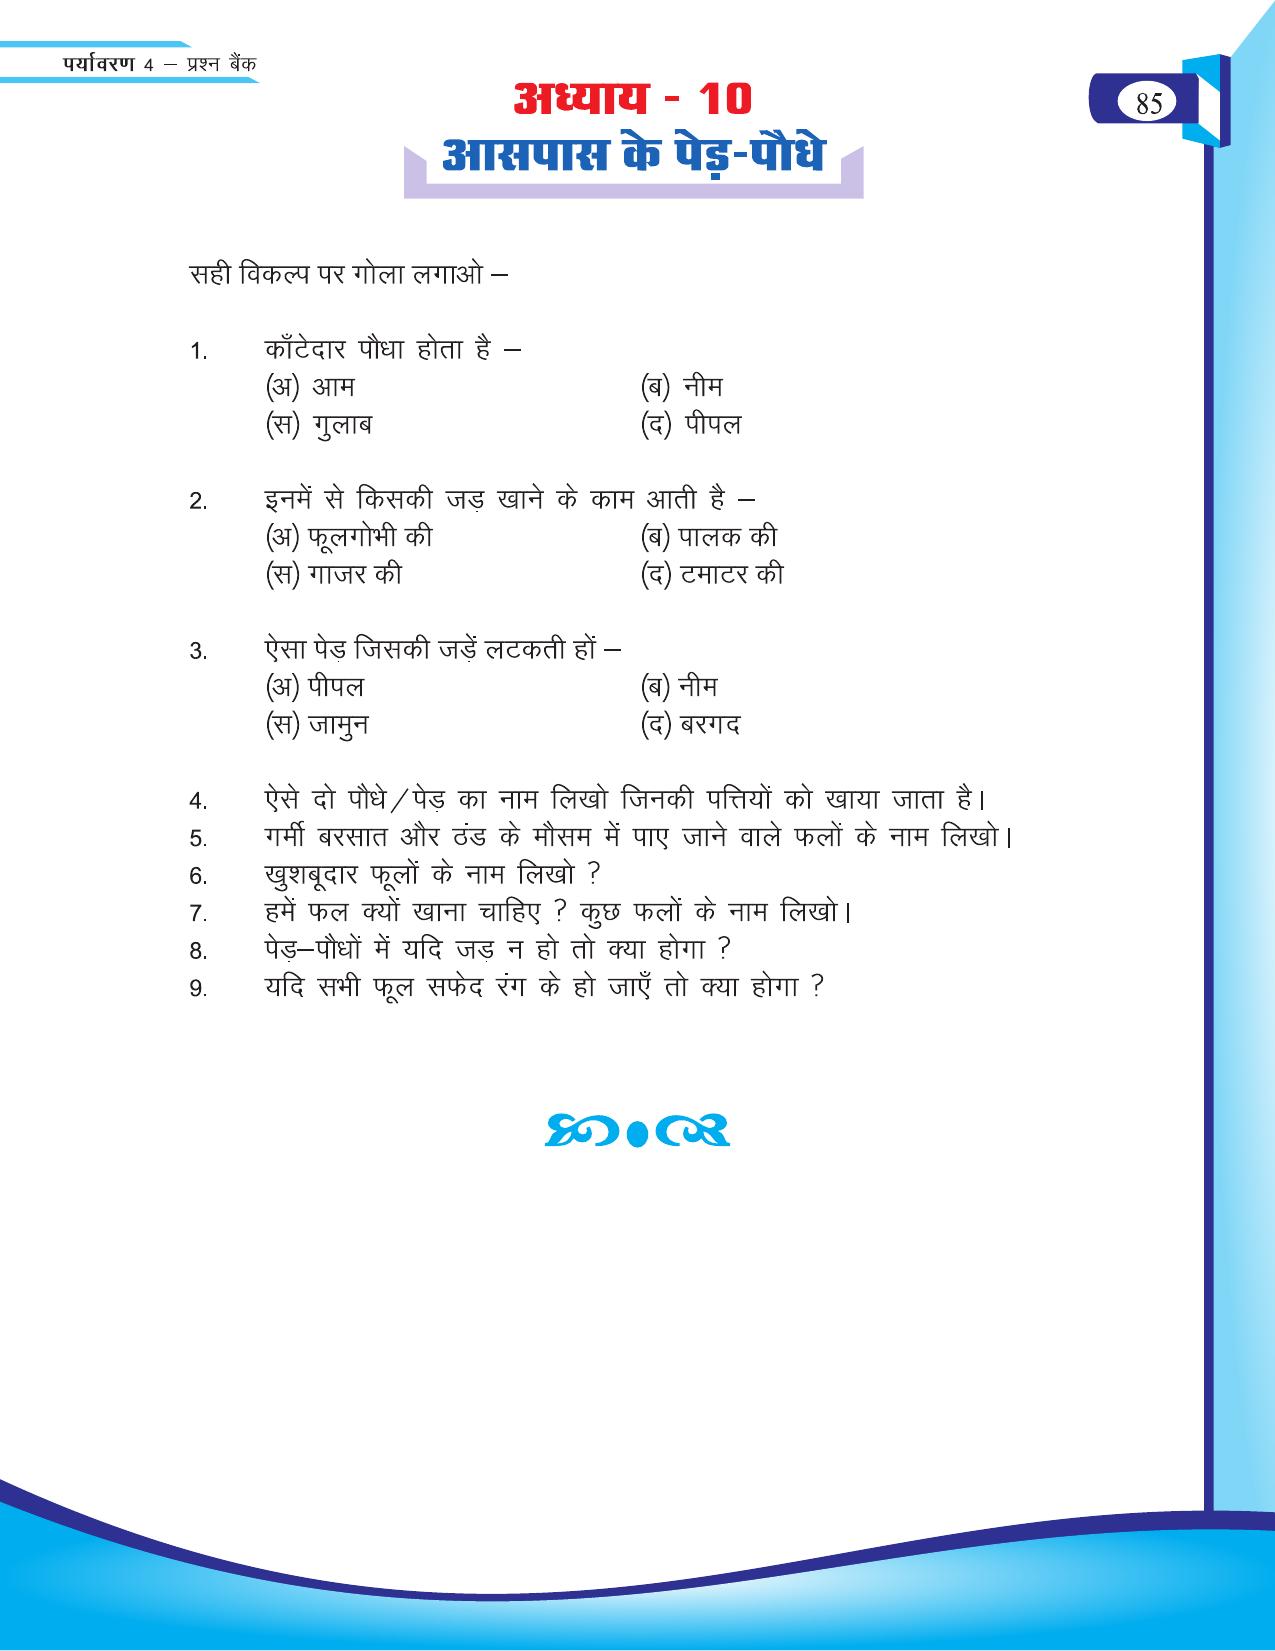 Chhattisgarh Board Class 4 EVS Question Bank 2015-16 - Page 14